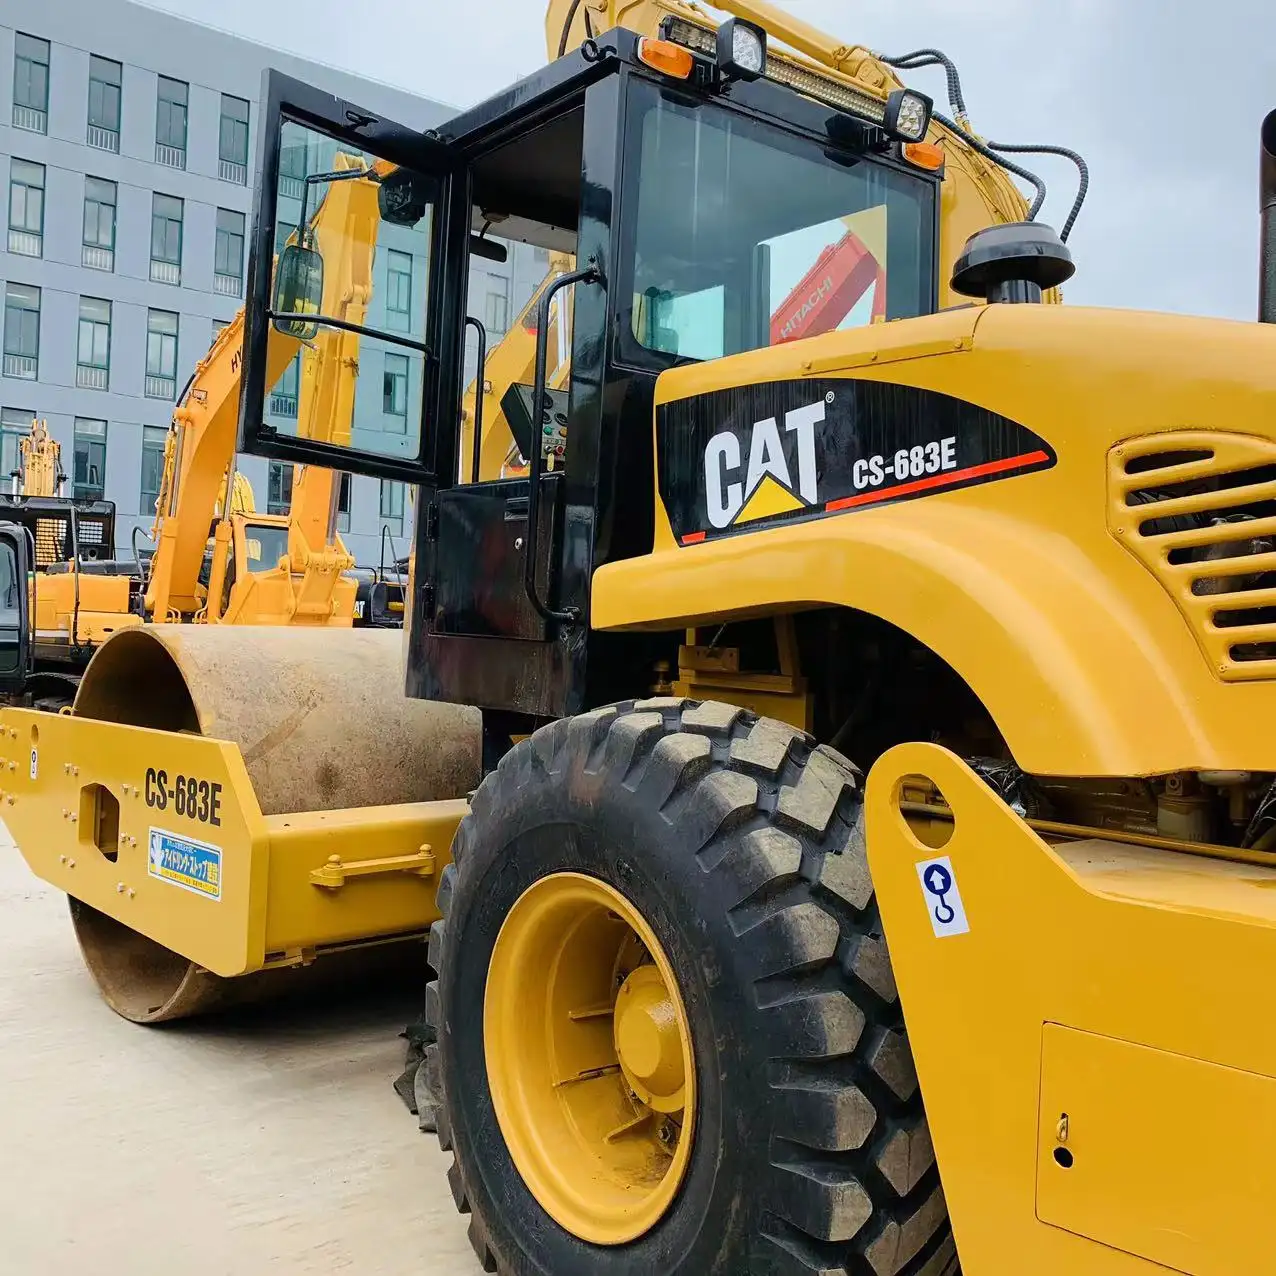 Máquina de construcción de carreteras Caterpillar CAT CS683E rodillo vibrador precio bajo en venta en Shanghai